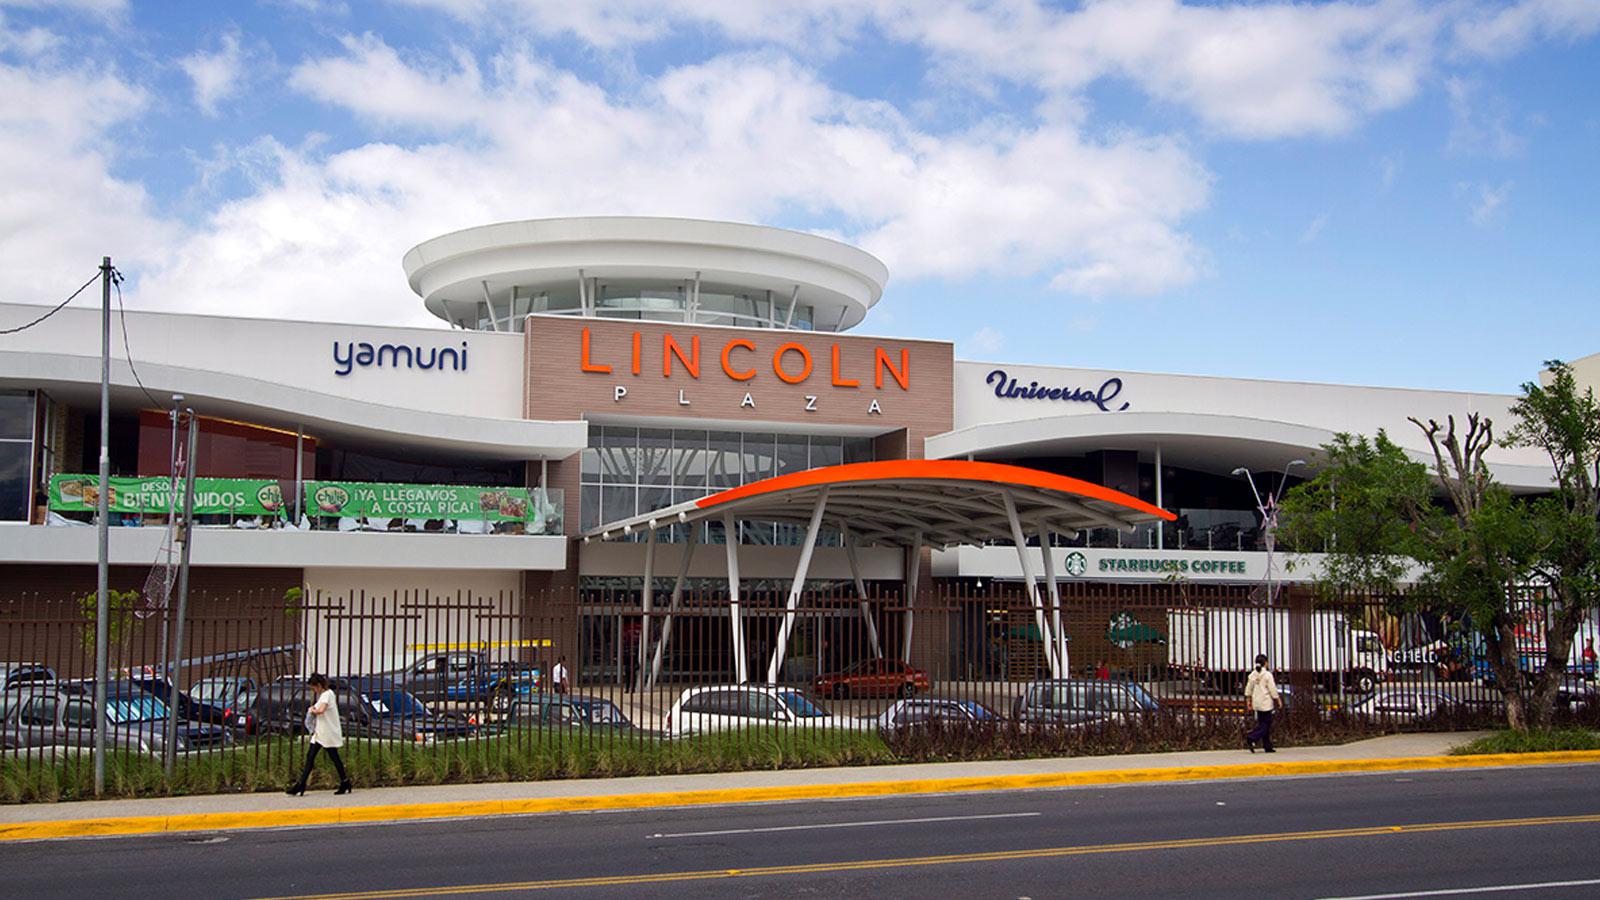 Centros Comerciales se activan como centros de acopio ante Emergencia Nacional